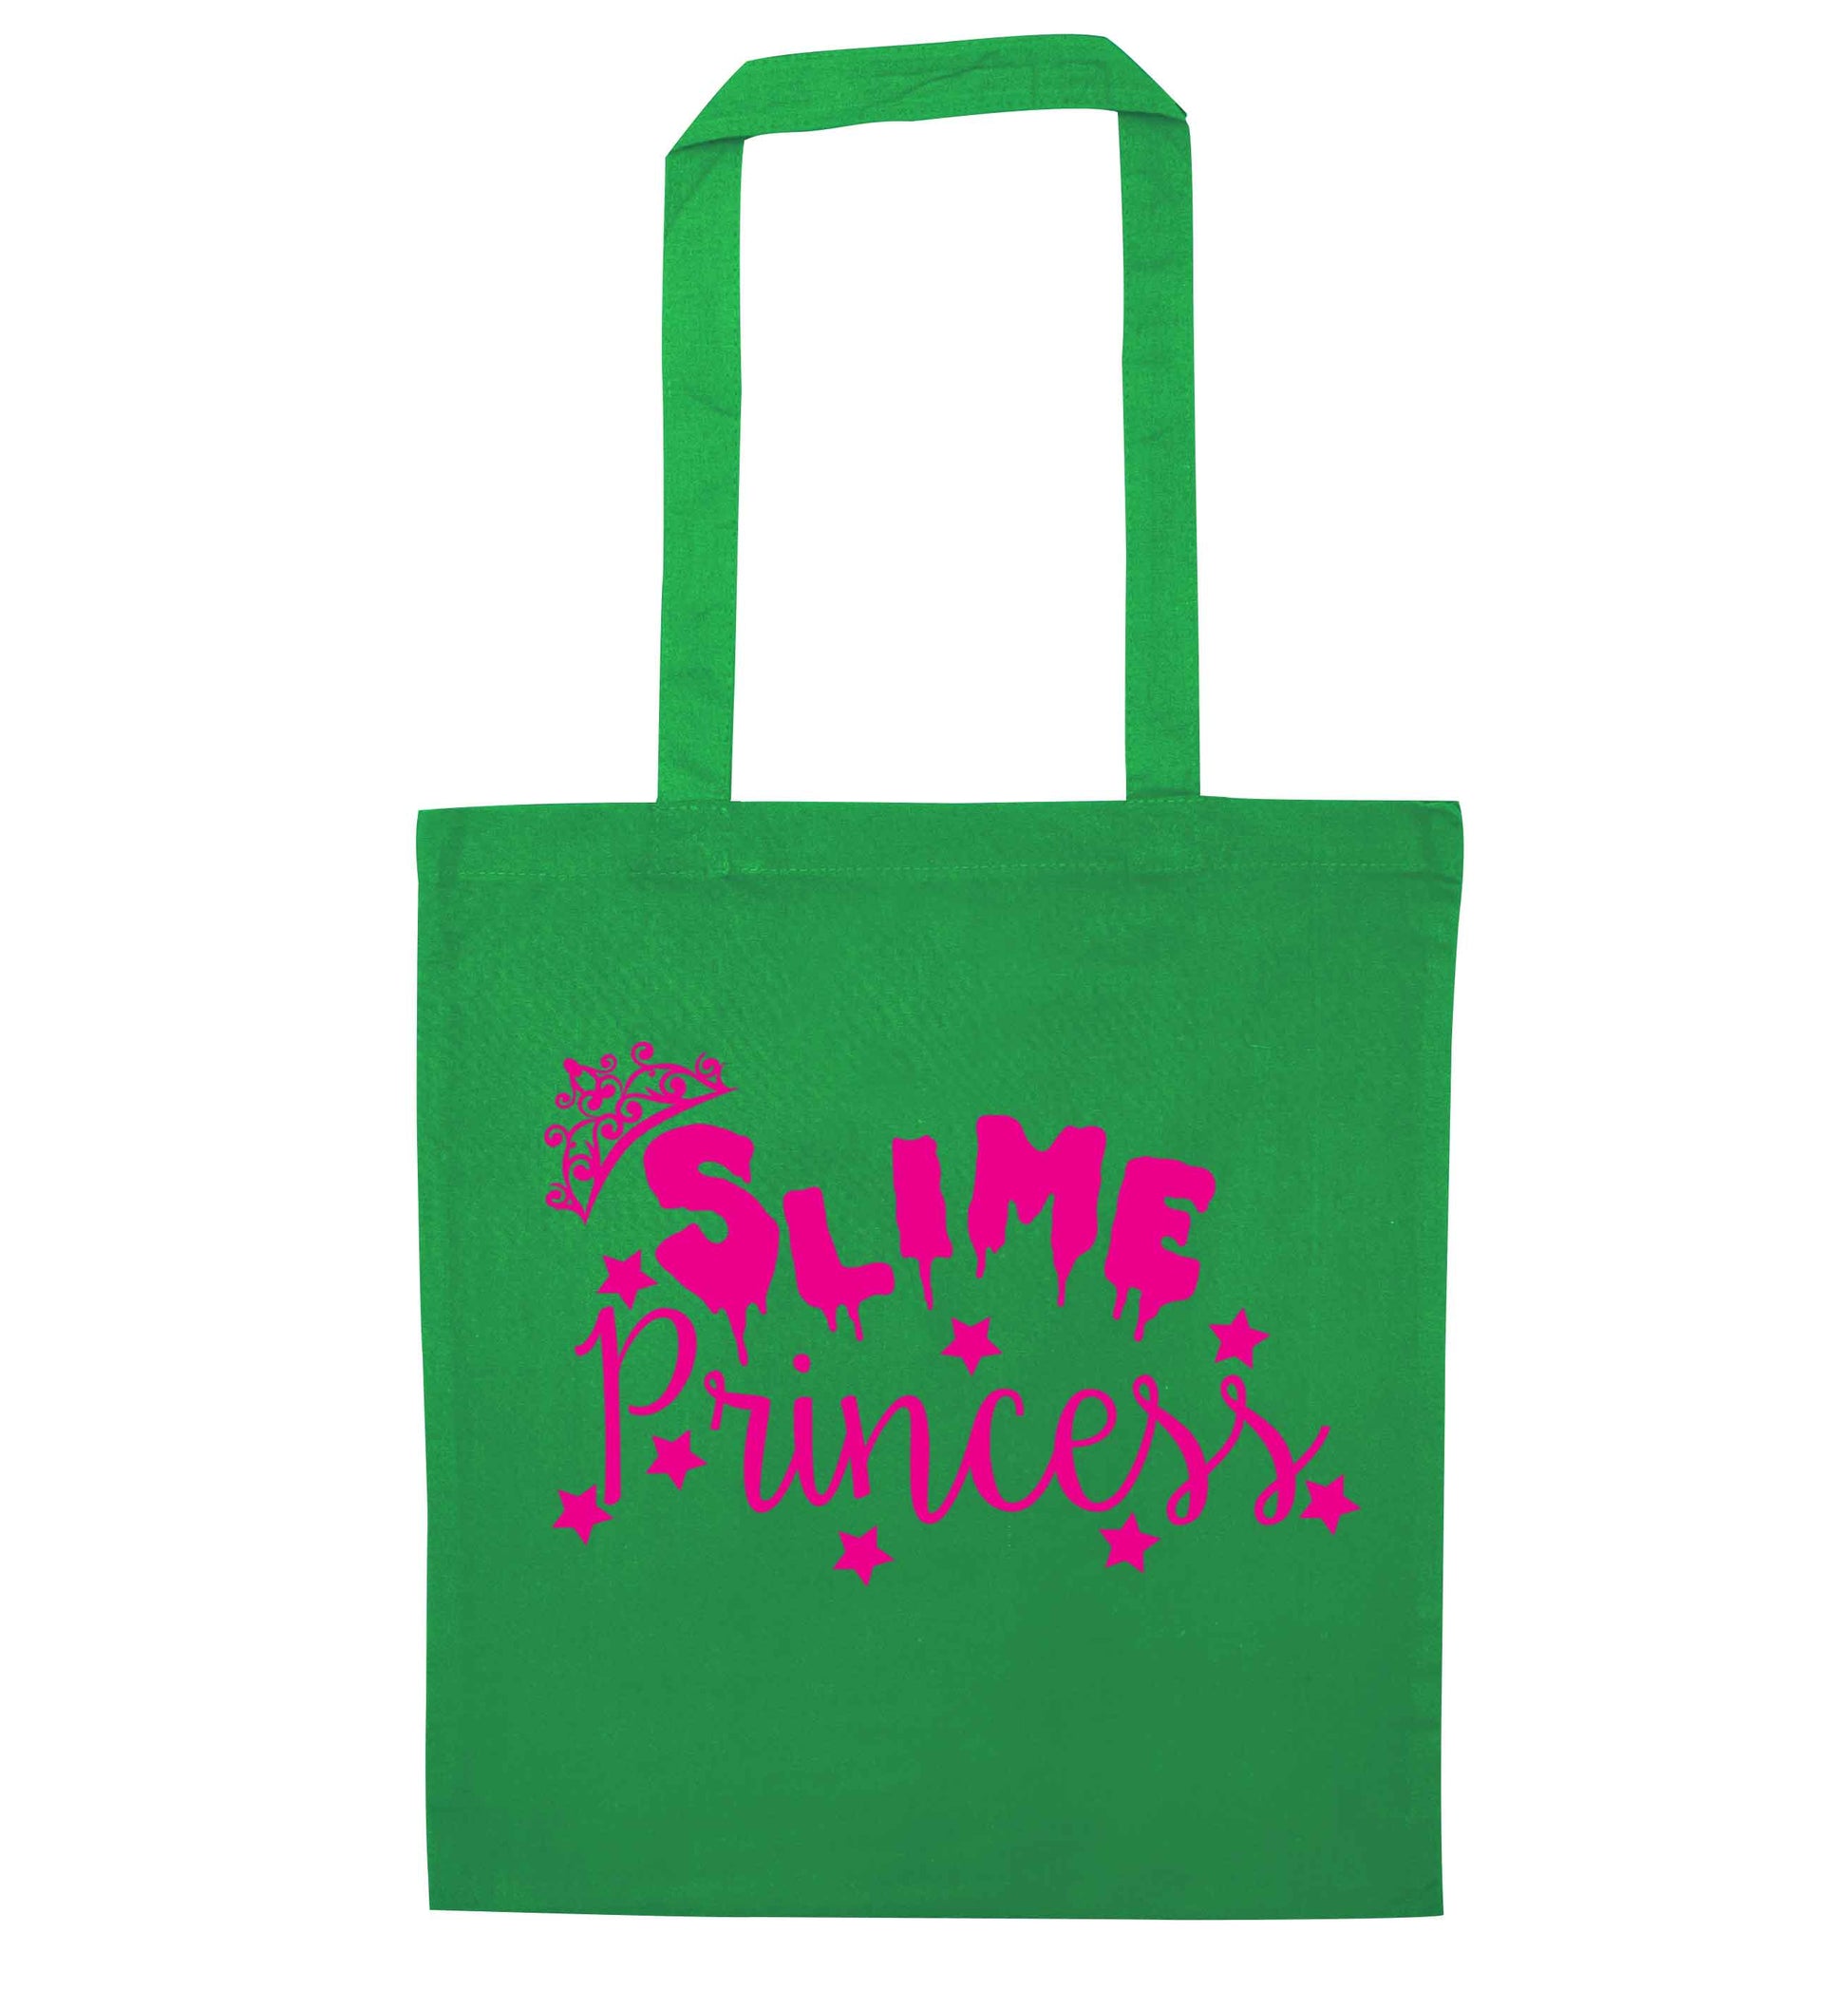 Neon pink slime princess green tote bag